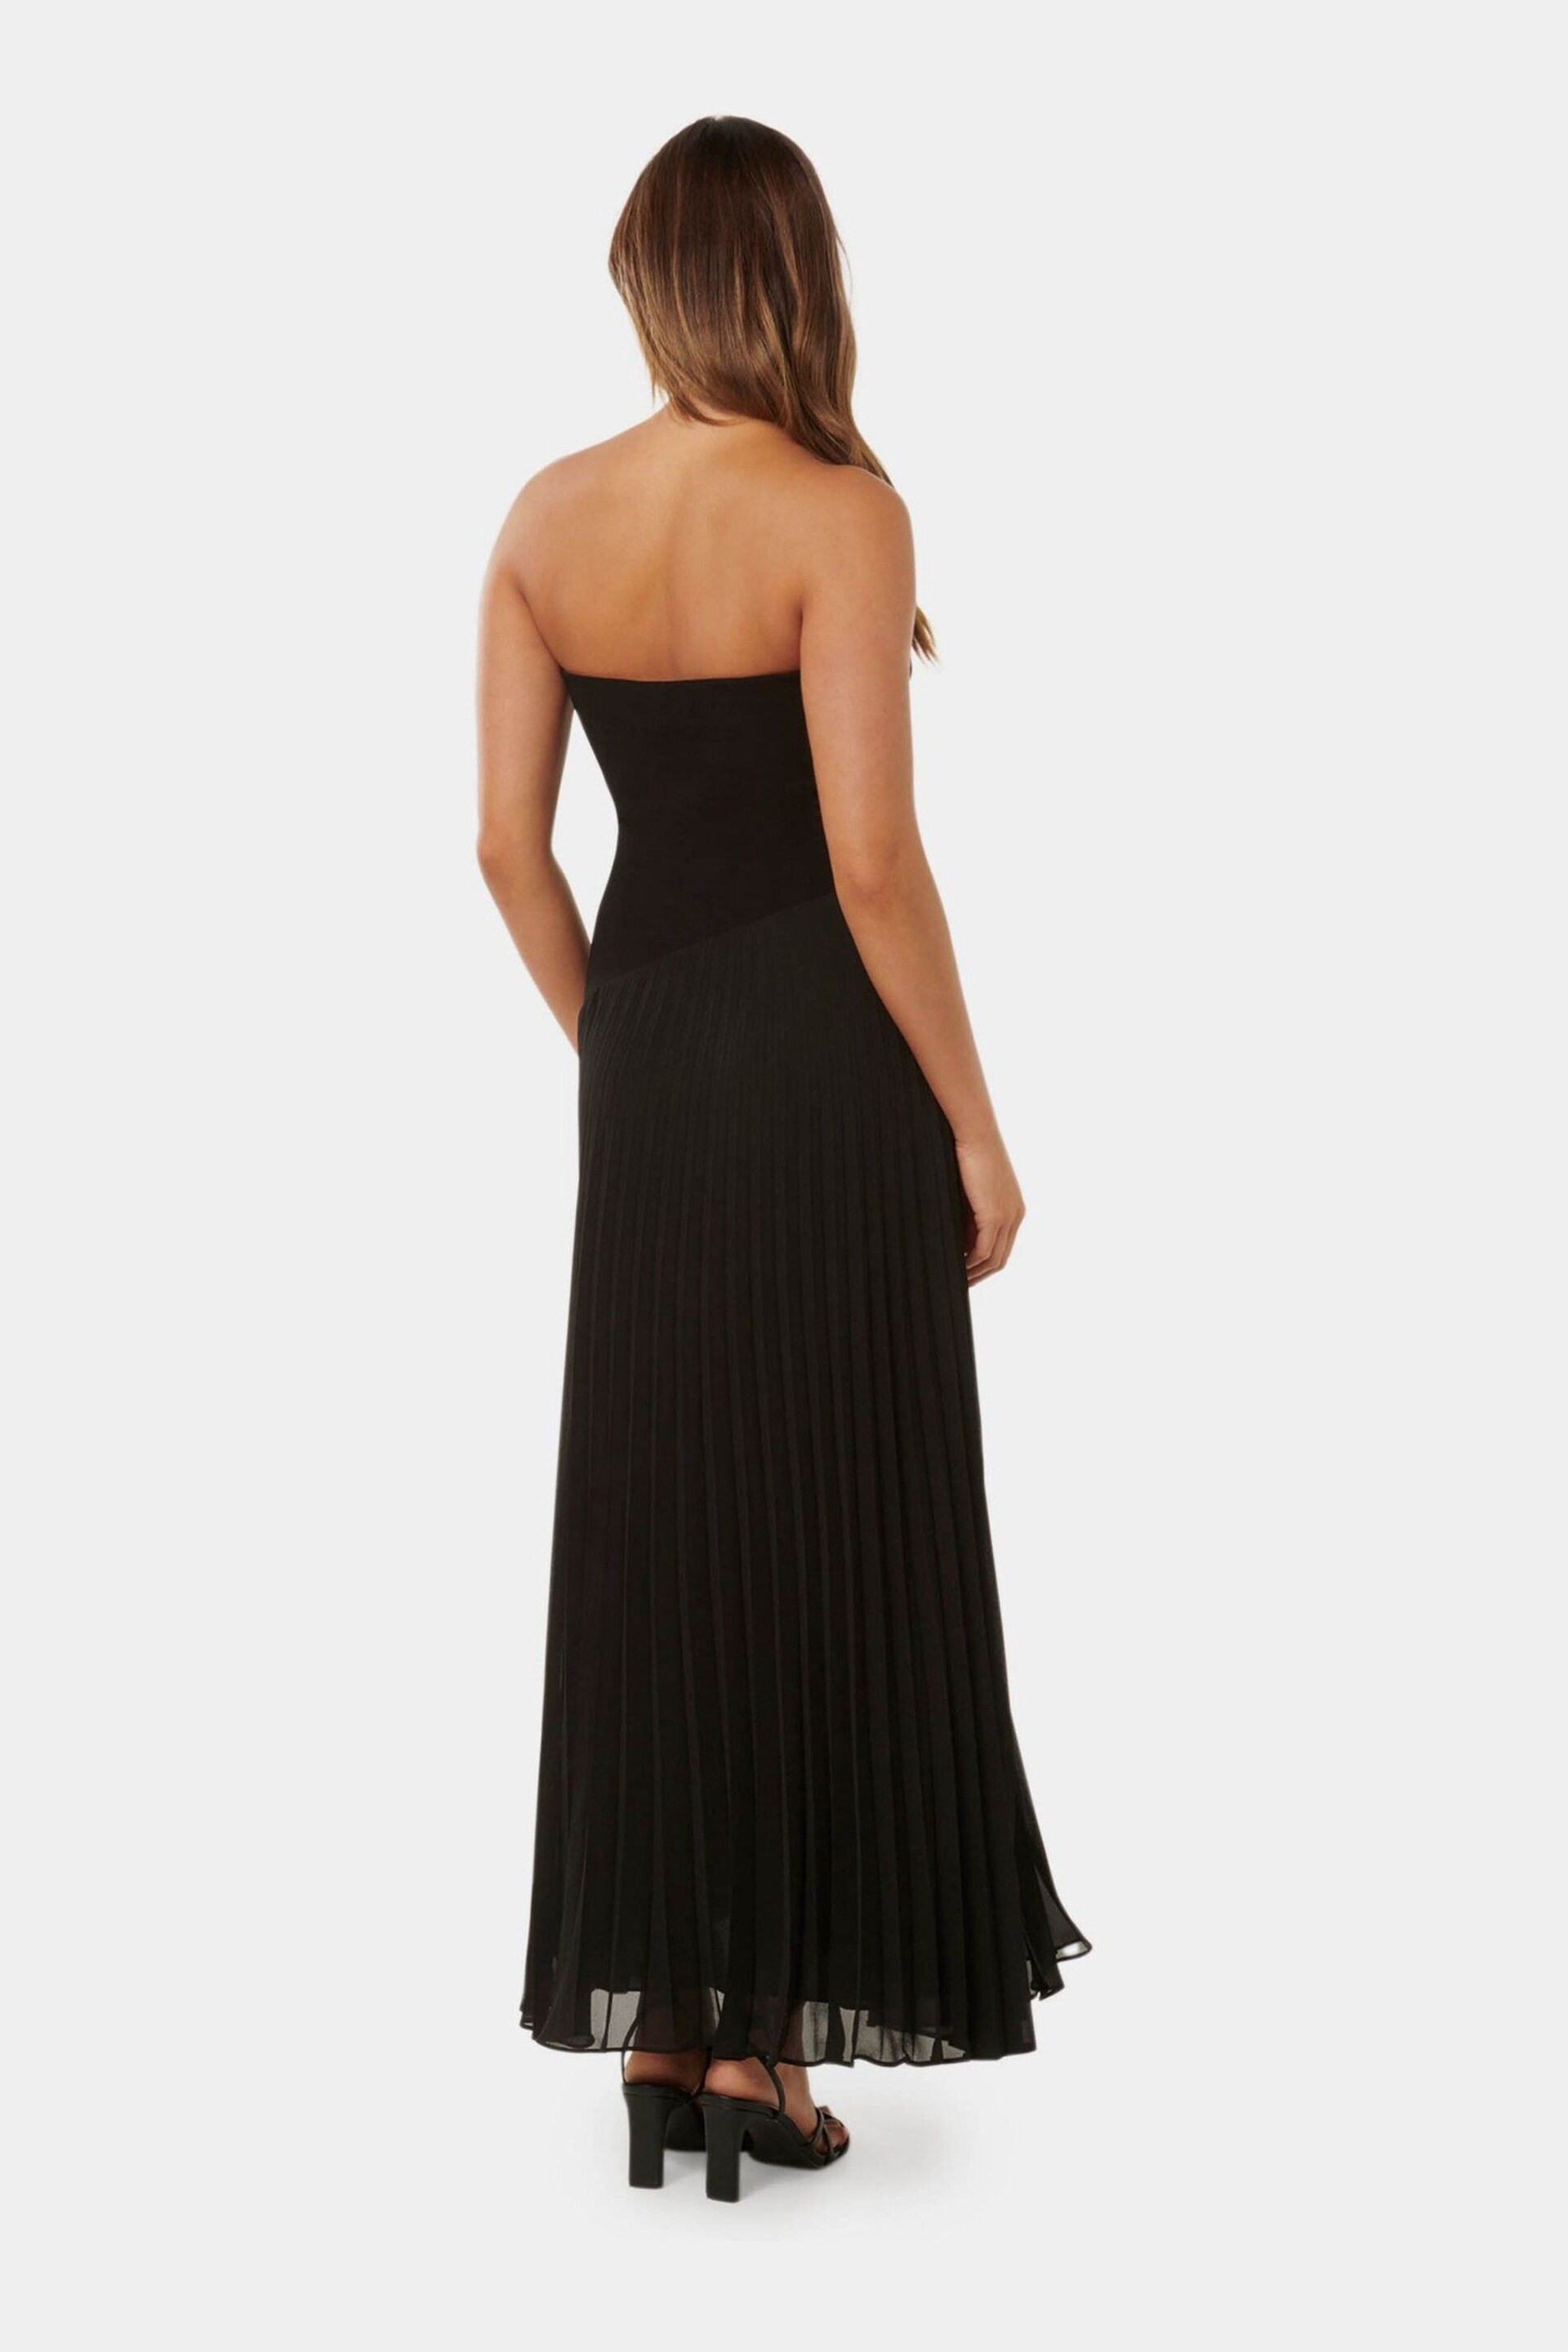 Forever New Black Capri Strapless Pleated Midi Dress - Image 4 of 4